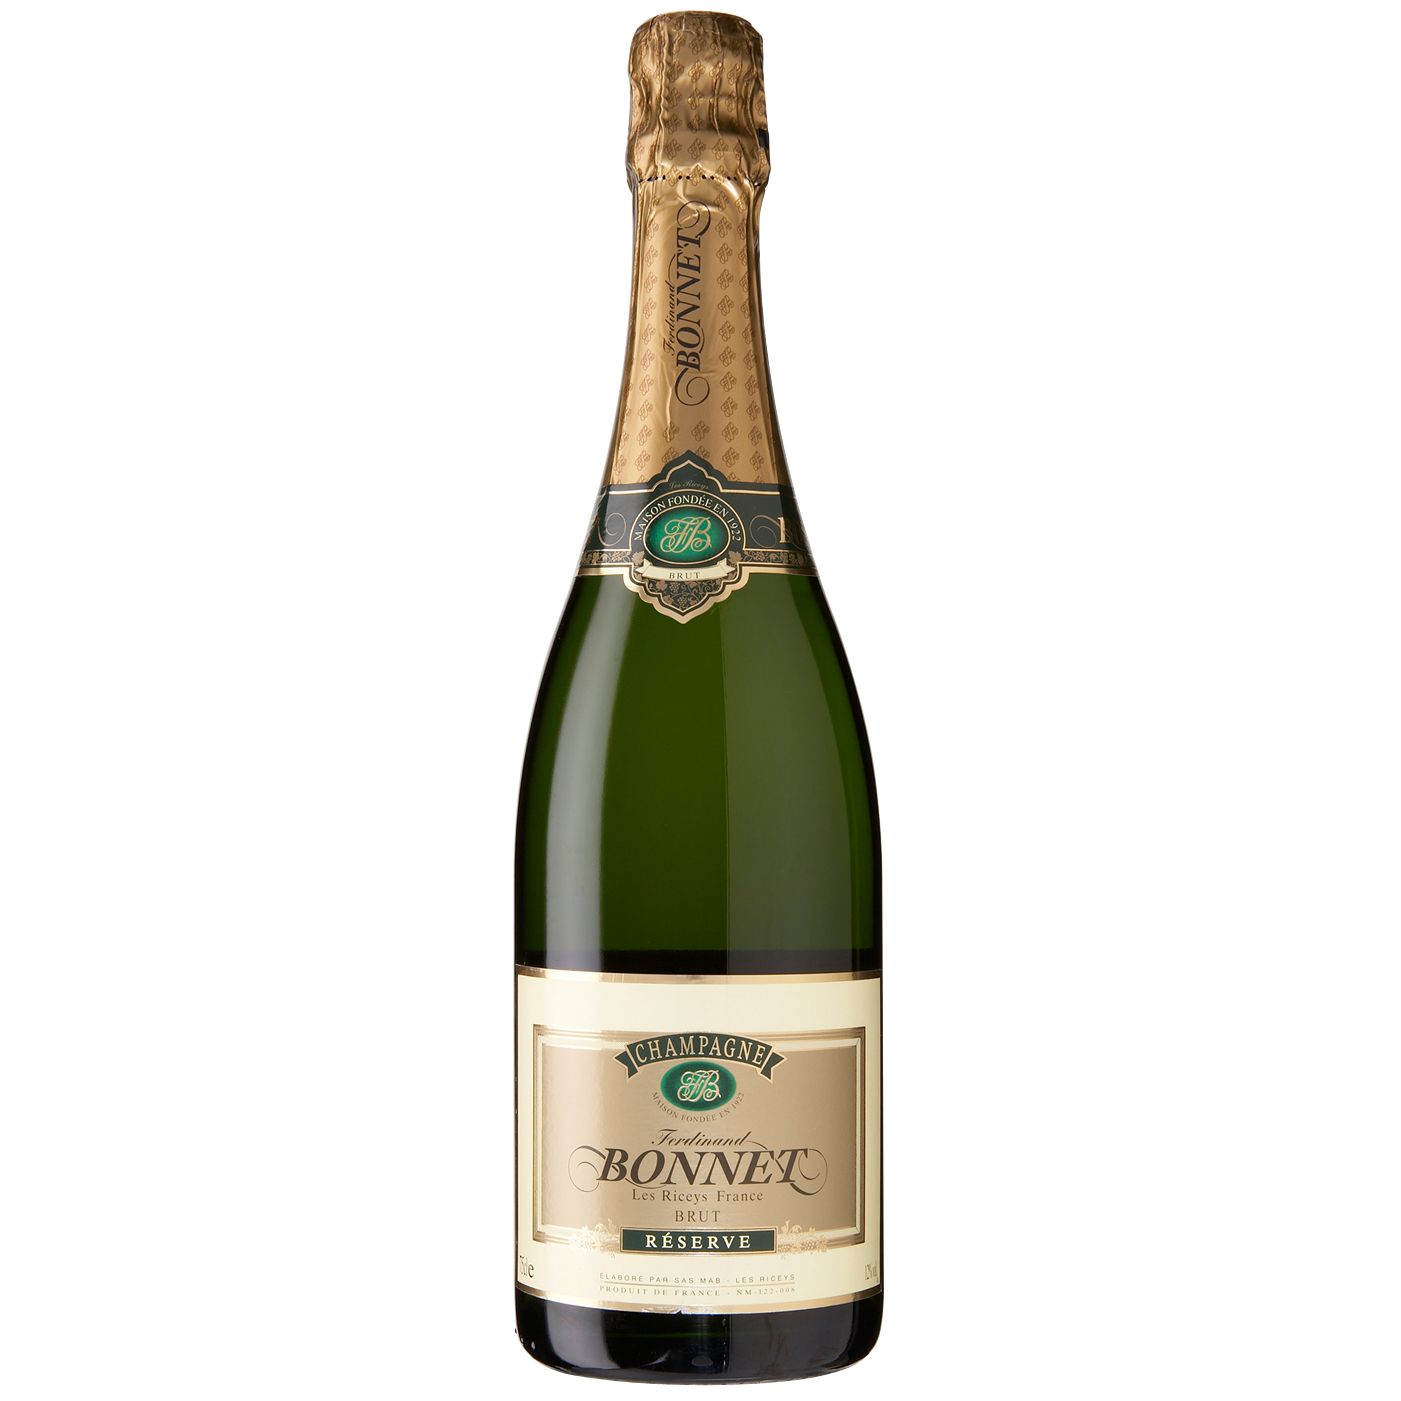 Ferdinand Bonnet Brut NV Champagne, France at JohnLewis